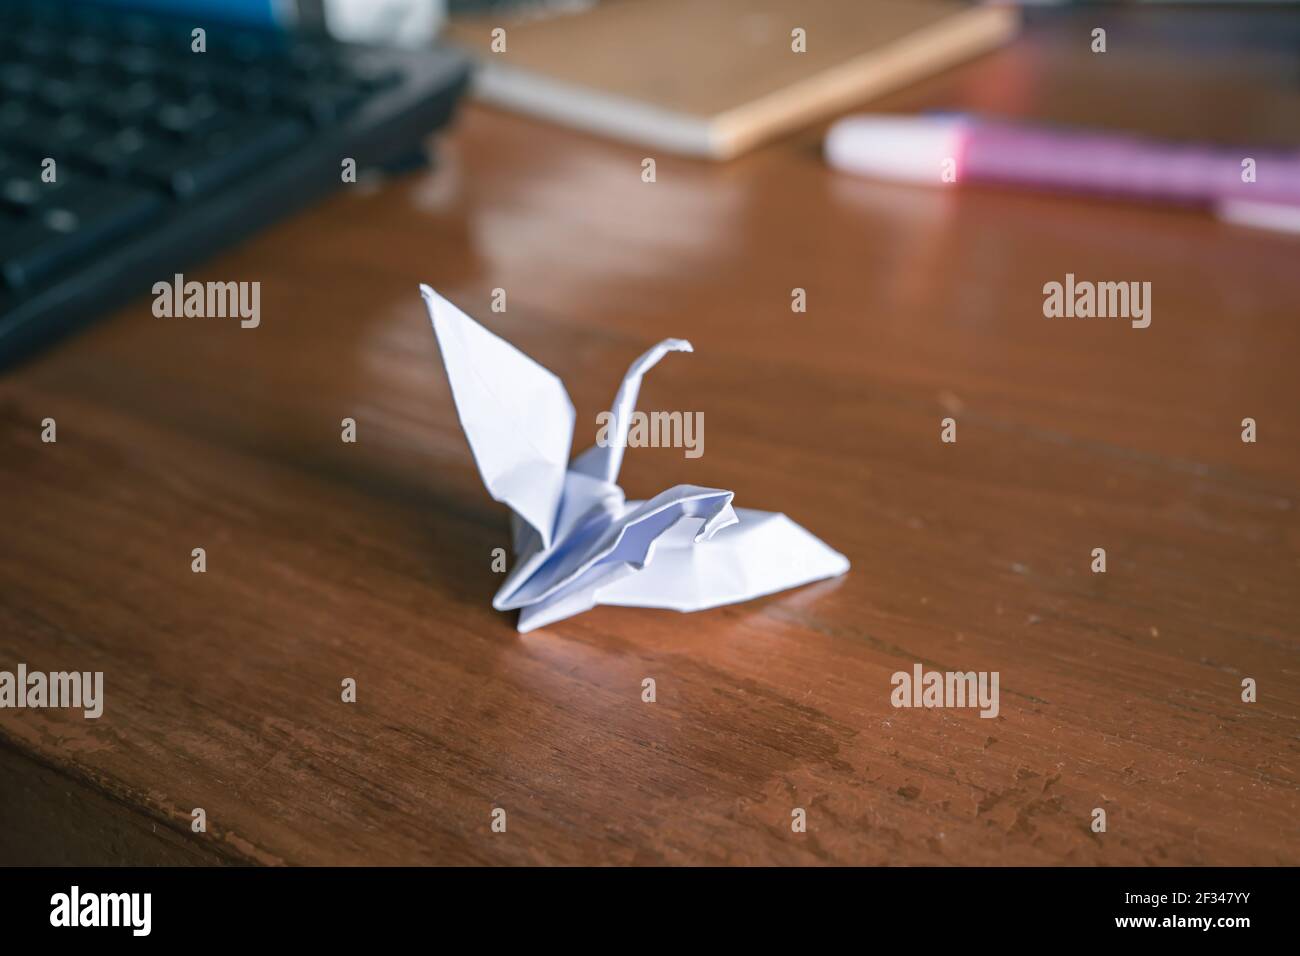 Konzept für psychische Erkrankungen. Beschädigter Origami-Papierkran auf Holztisch. Stockfoto